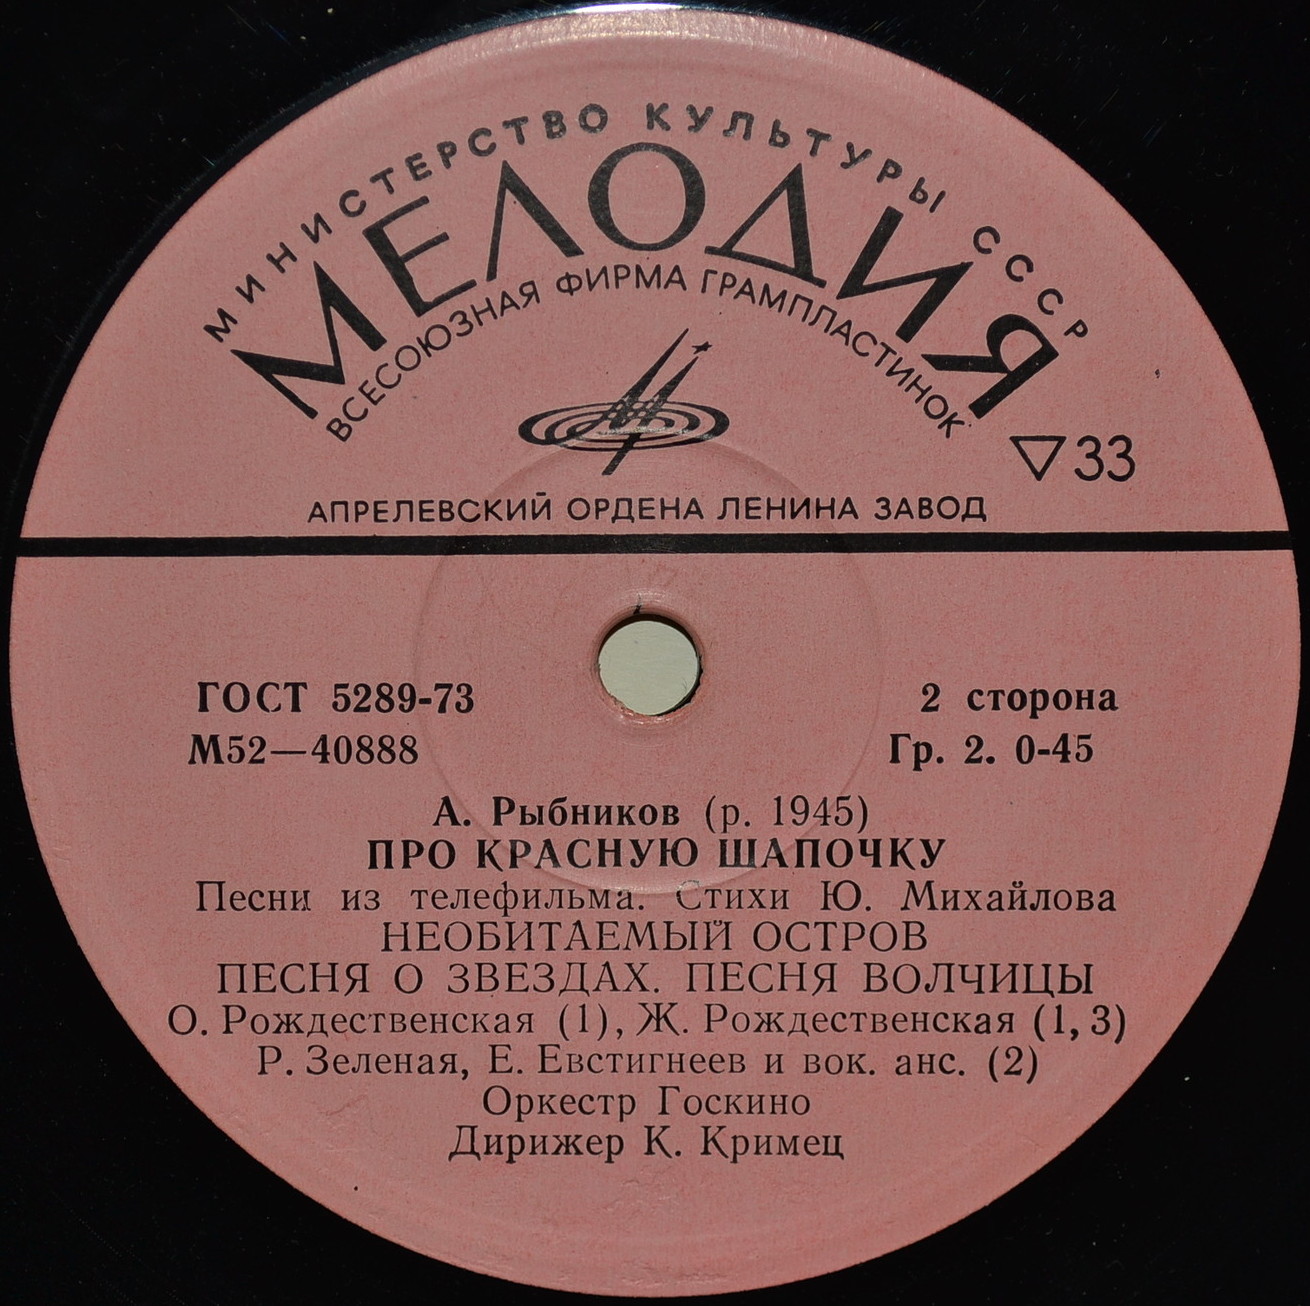 A. РЫБНИКОВ (1945): «Про Красную Шапочку», песни из телефильма (стихи Ю. Михайлова)